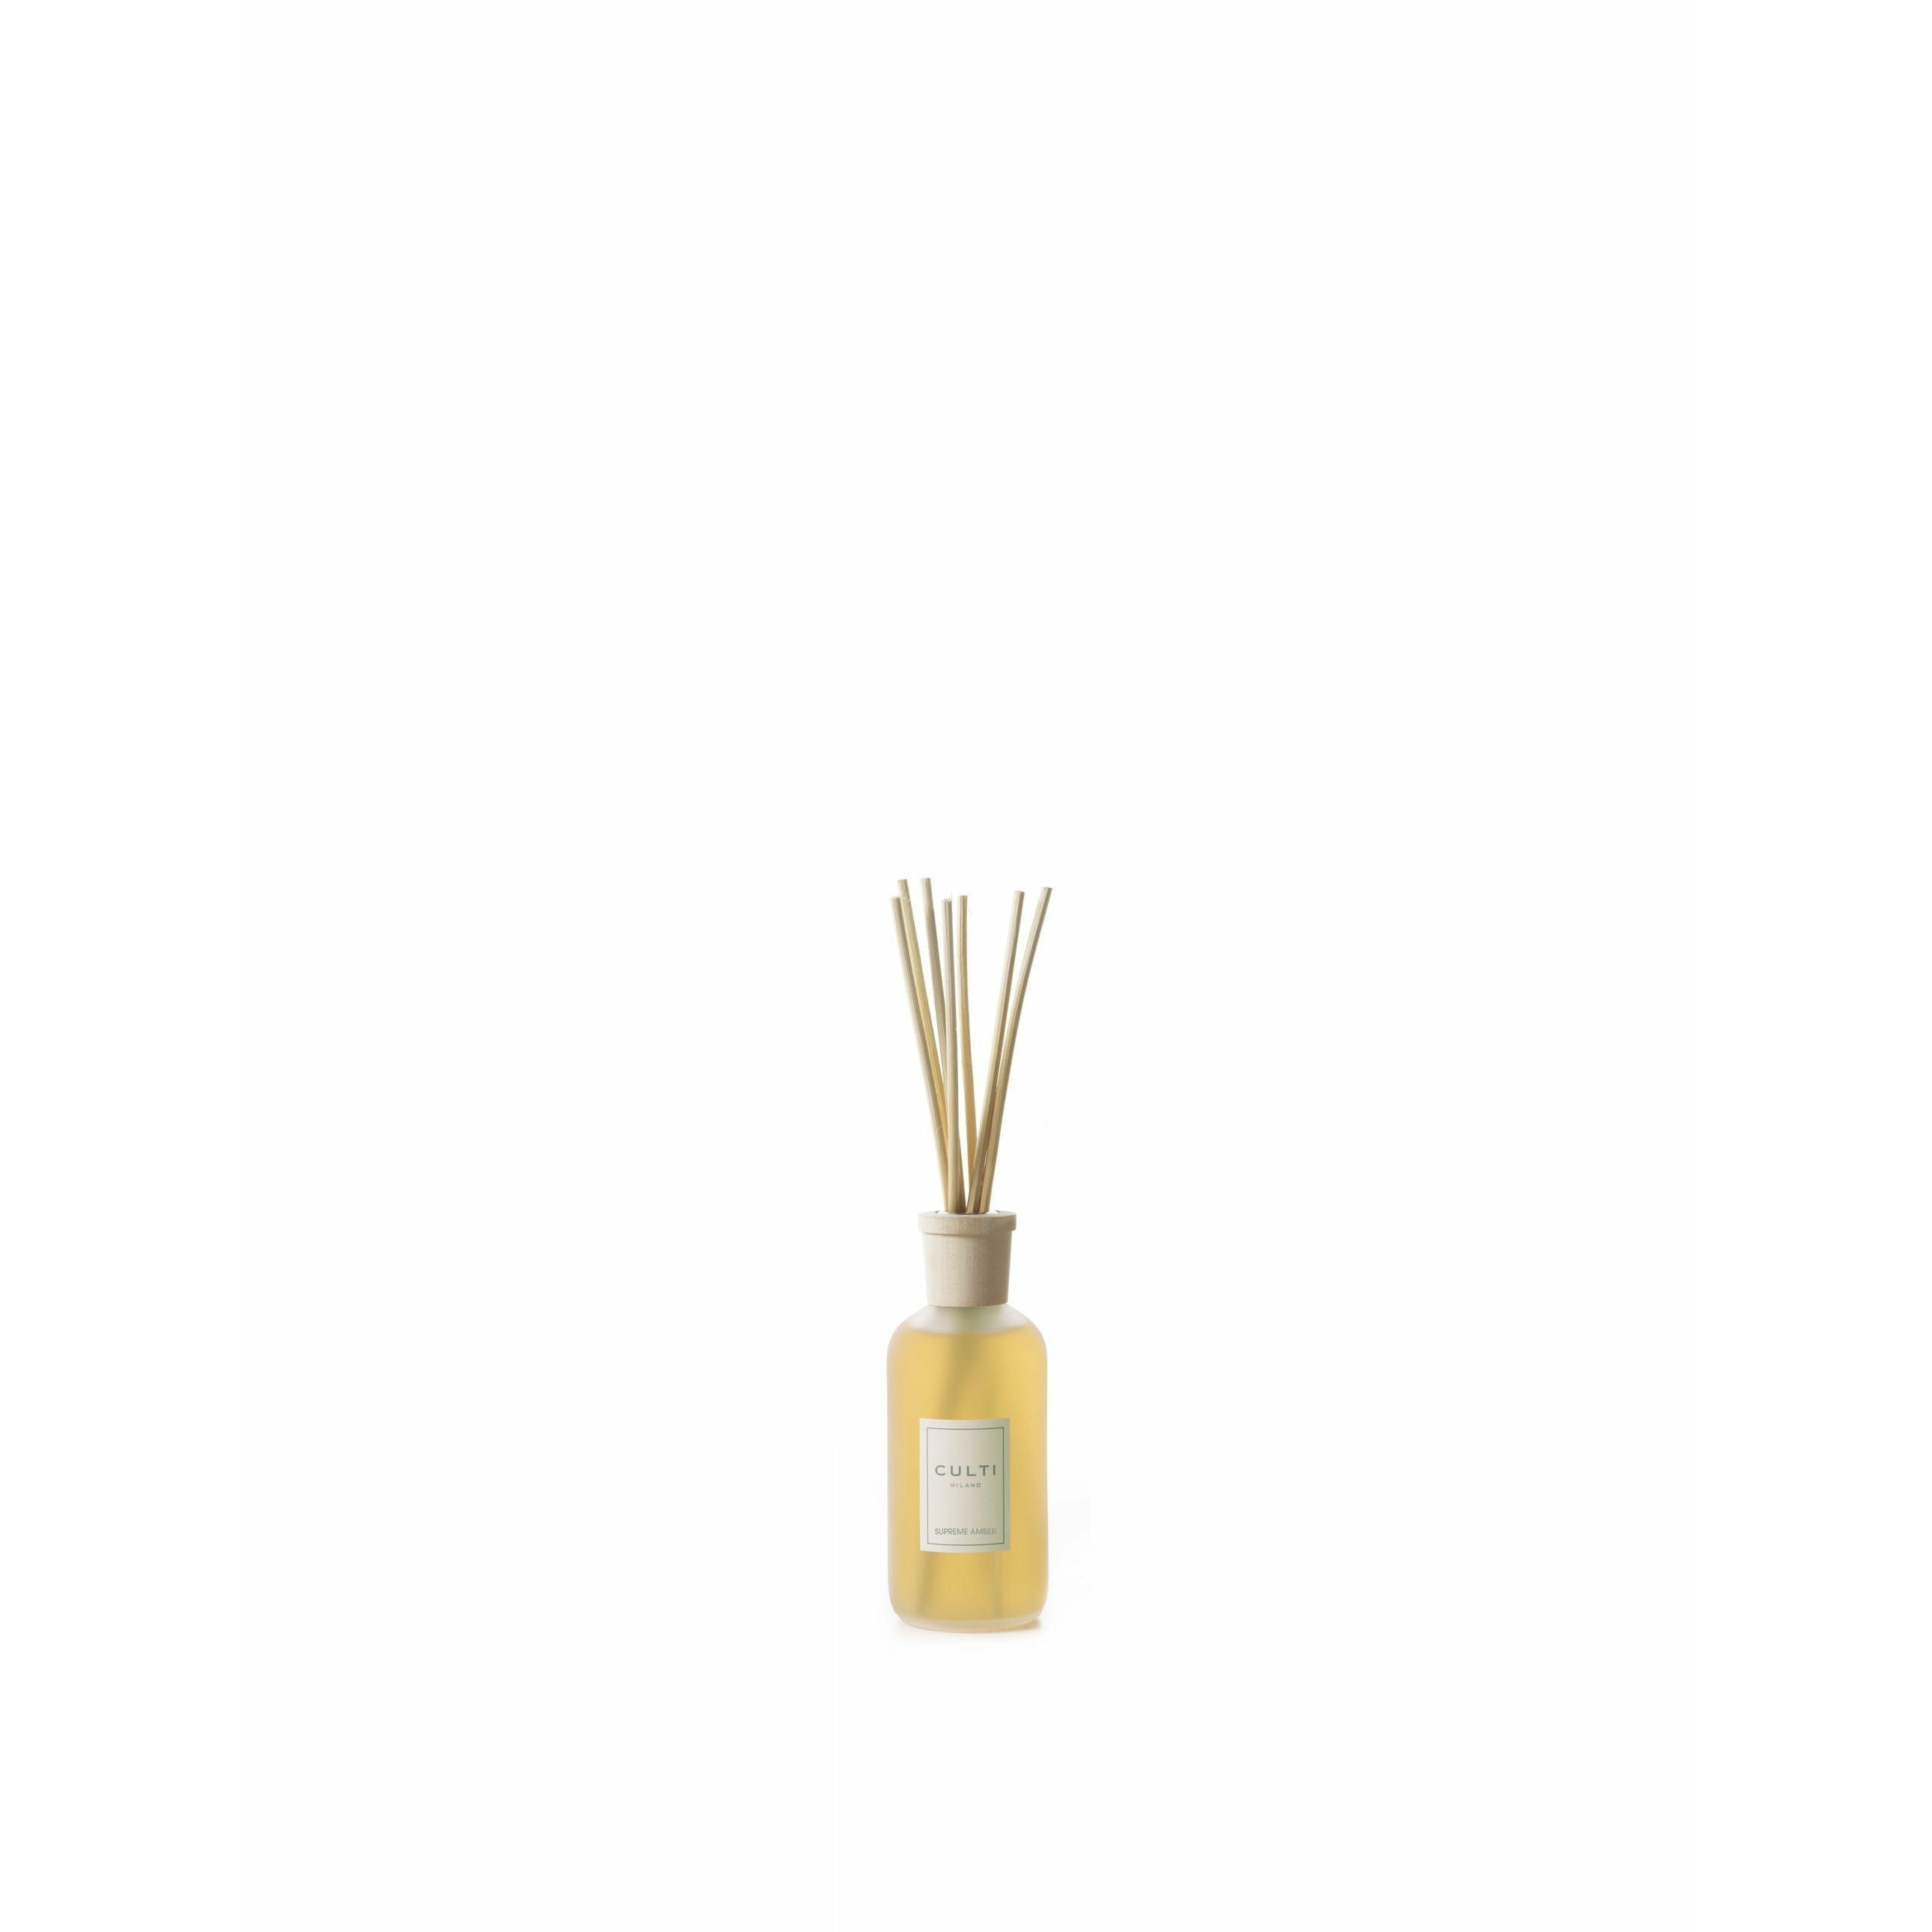 Culti Milano Stile klassisk duftdiffusor Supreme Amber, 250 ml